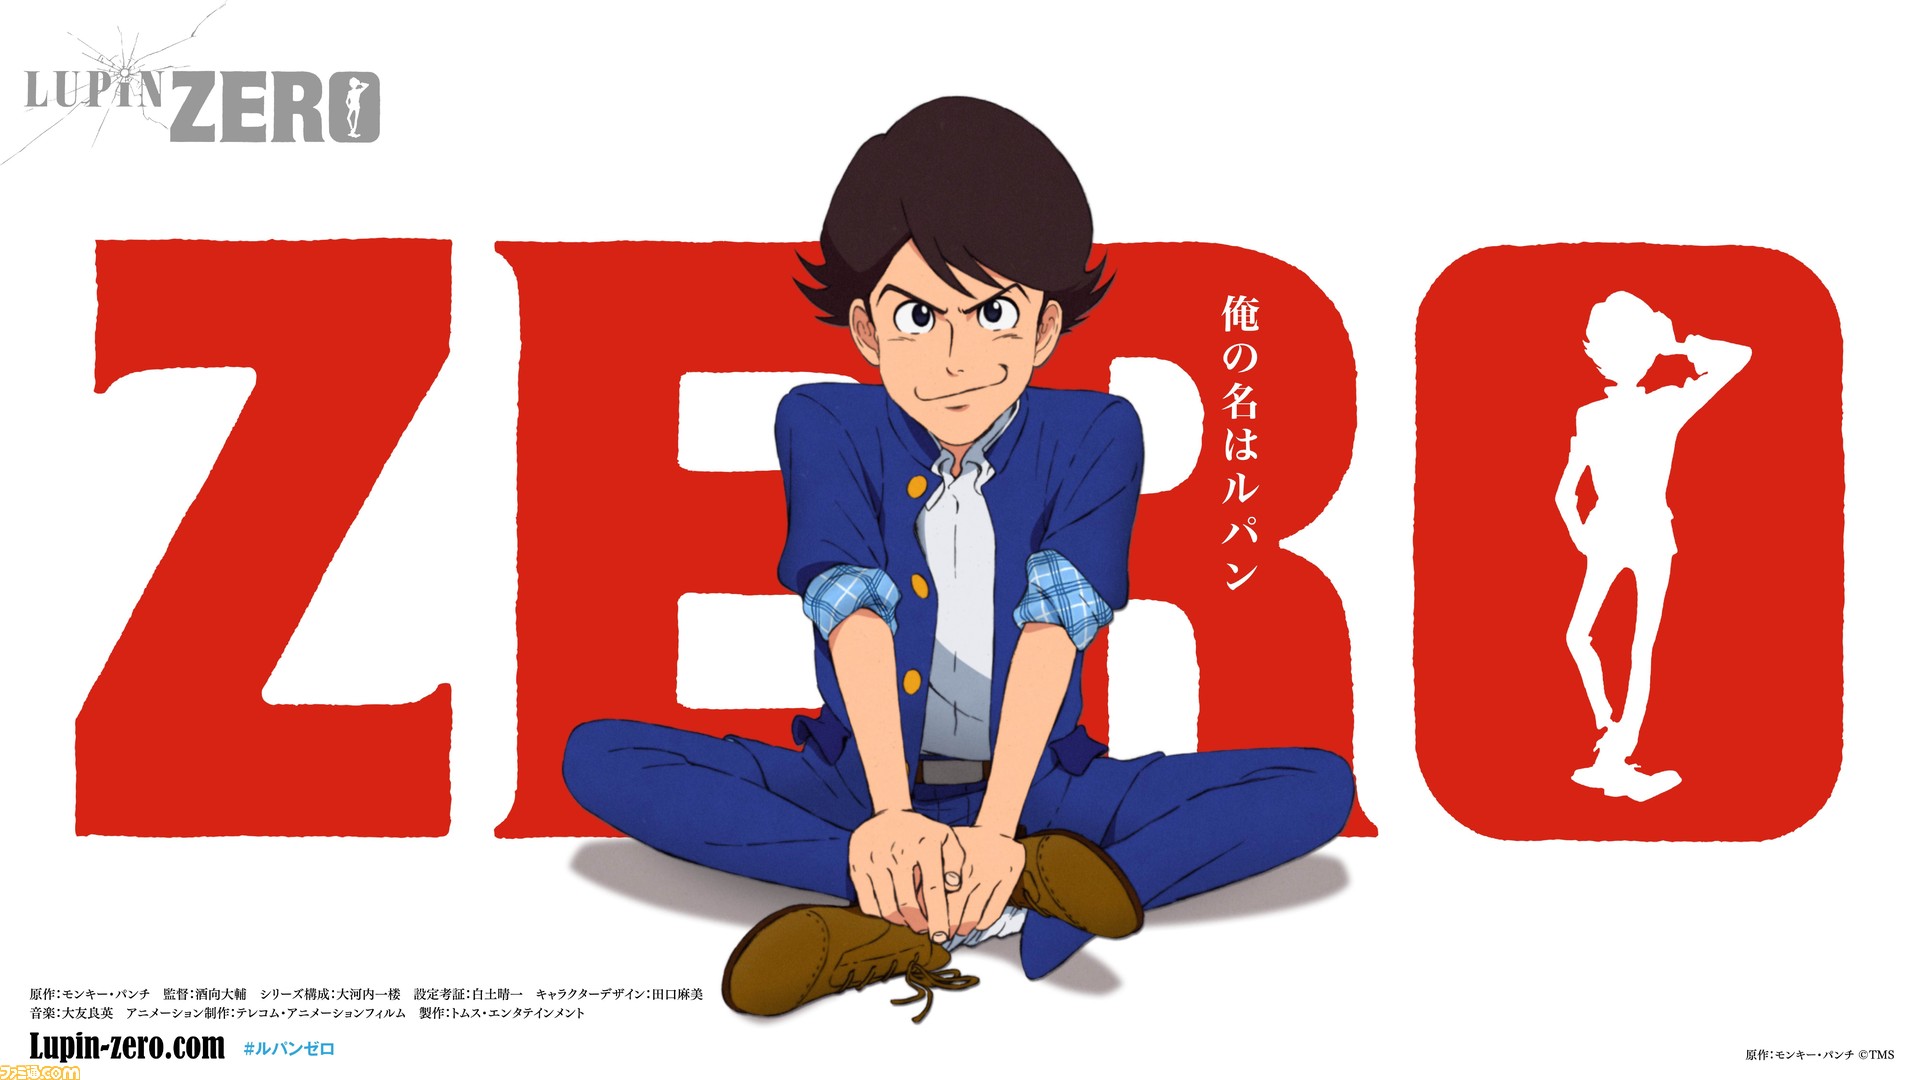 ルパン三世』の新作アニメ『LUPIN ZERO』が12月に配信決定。1960年代の高度経済成⻑期の日本を舞台にルパン三世の少年時代を描く |  ゲーム・エンタメ最新情報のファミ通.com